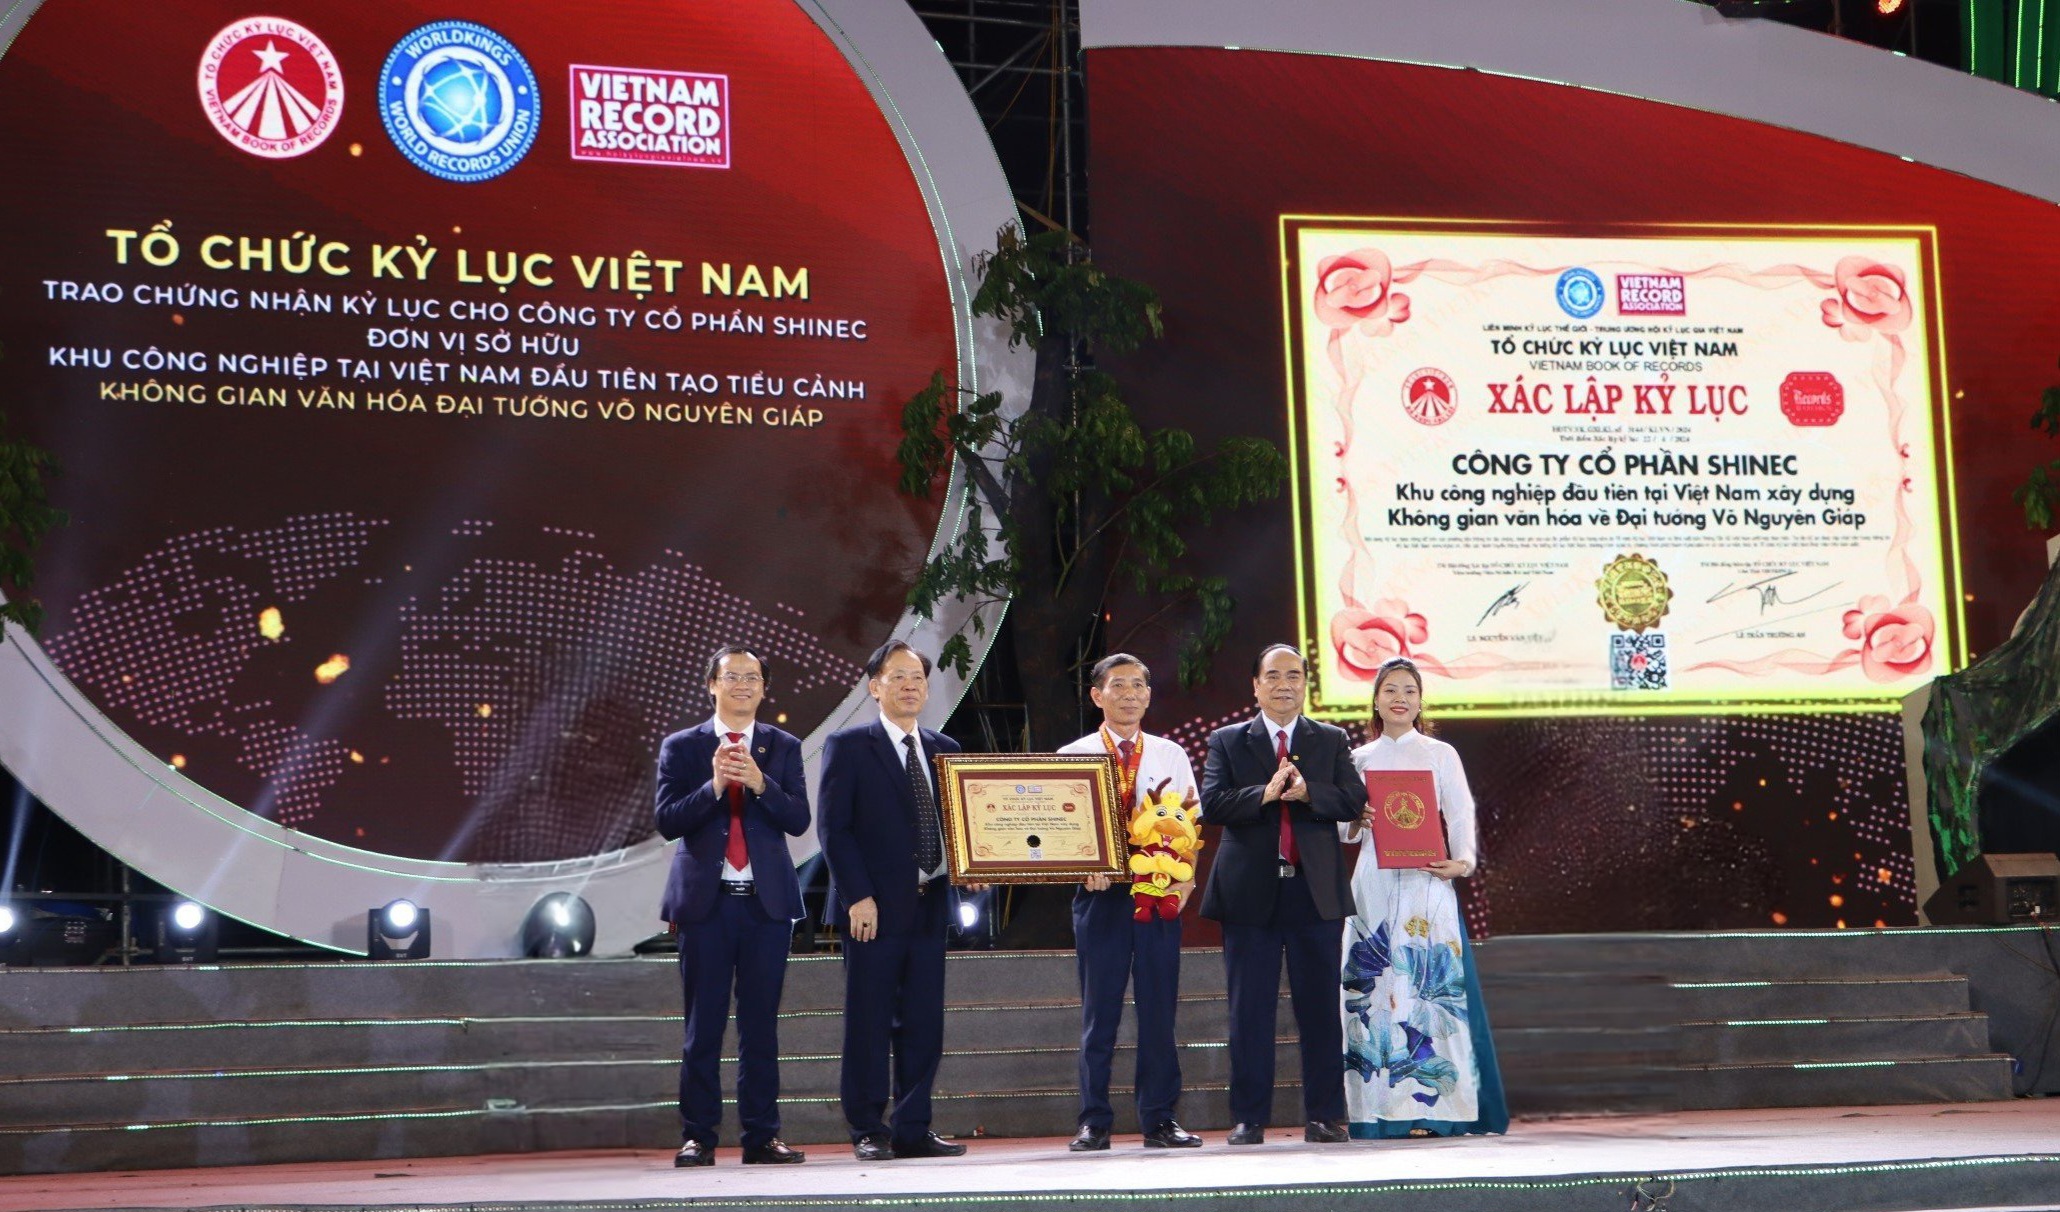 Tiến sĩ Thang Văn Phúc, Tiến sĩ Trần Ngọc Tăng và Ông Hoàng Thái Tuấn Anh trao bằng xác lập Kỷ lục Việt Nam đến Ông Hoàng Tuấn Anh - Tổng Giám Đốc Công ty Cổ phần Shinec (Ảnh: VietKings)